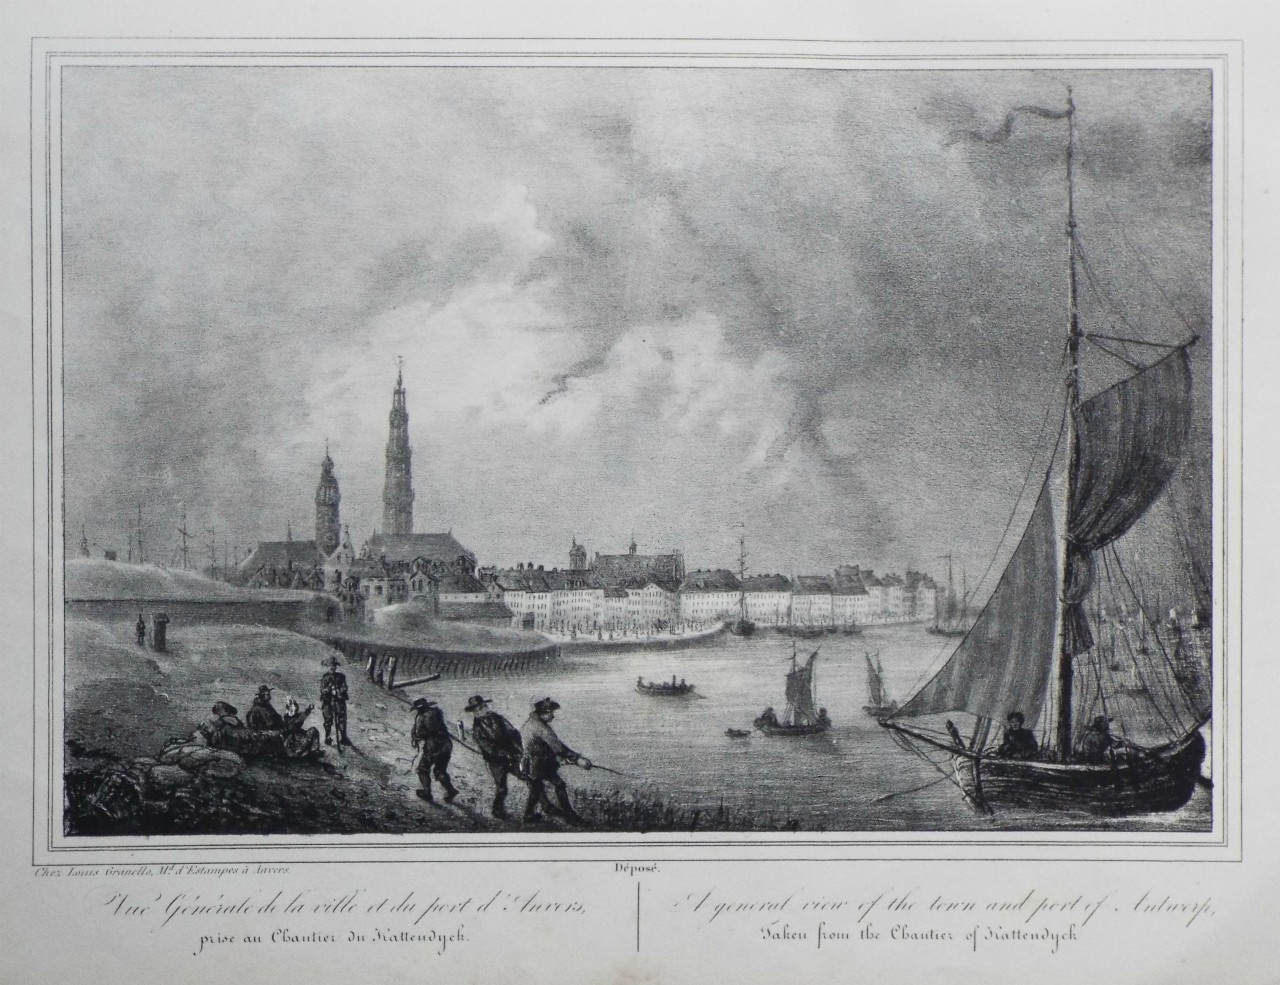 Lithograph - Vue Generale de la ville et du Port d'Anvers. A general view of the town and port of Antwerp.